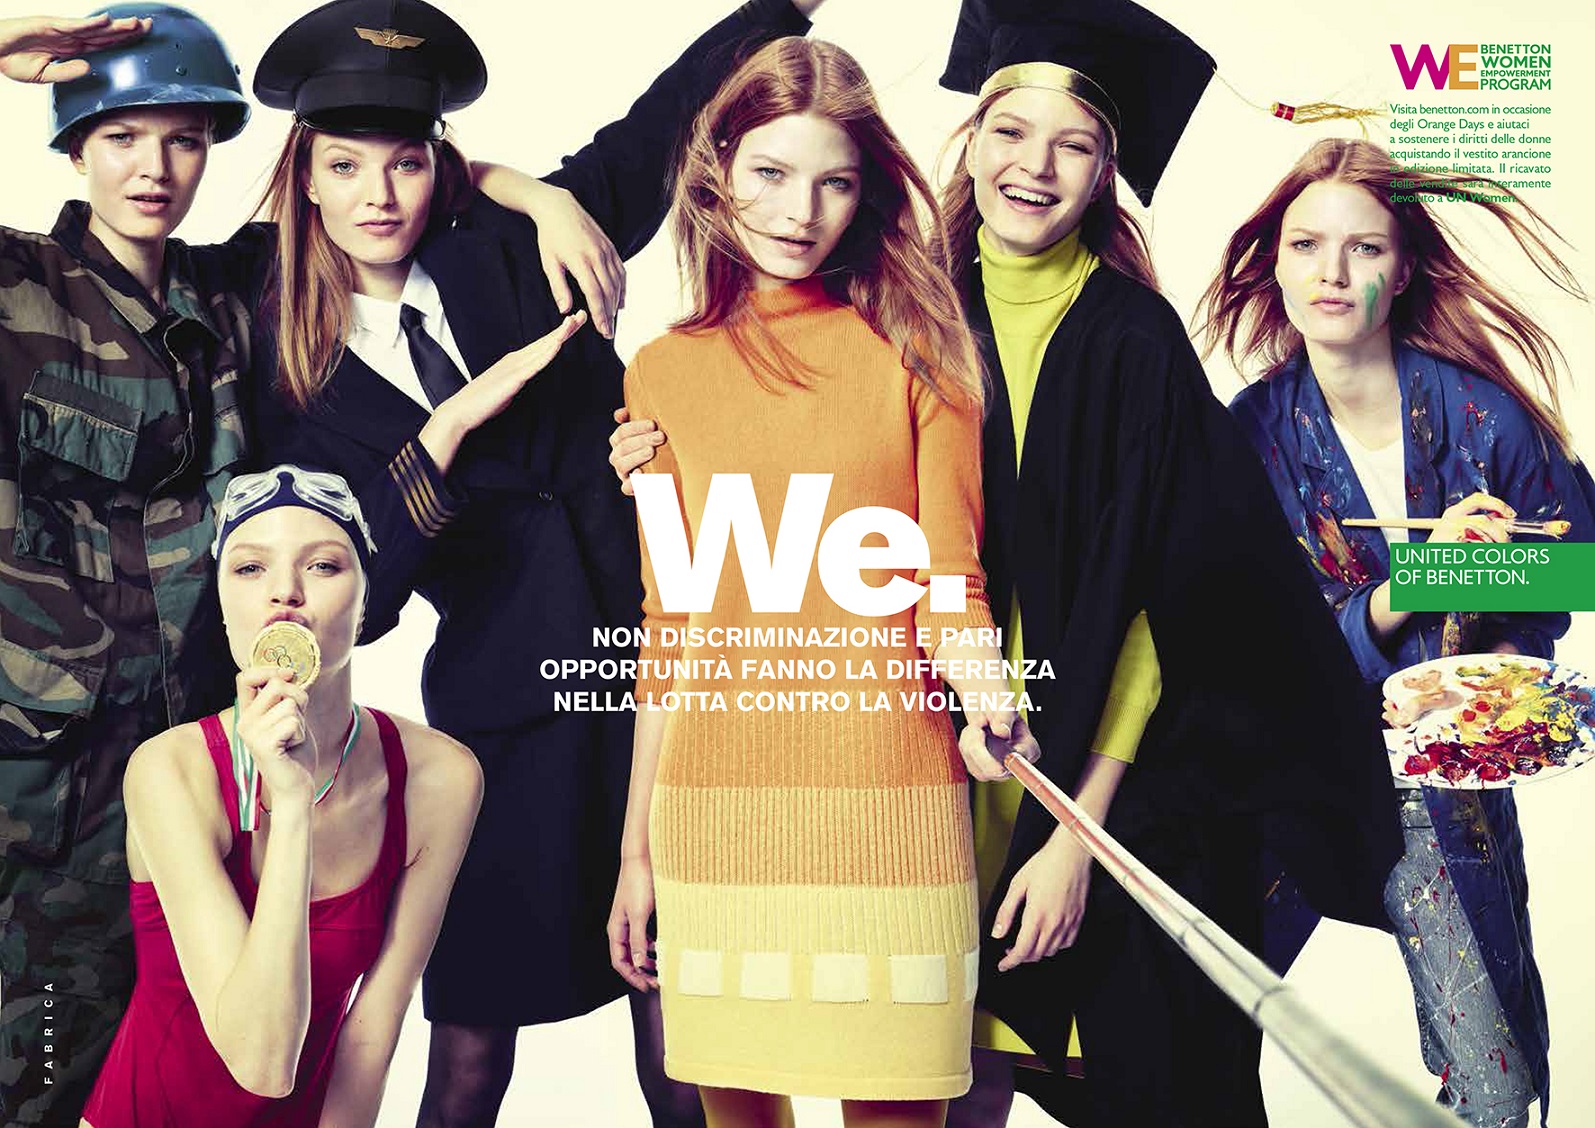 Giornata mondiale contro la violenza sulle donne 2015: United Colors of Benetton lancia la campagna “Tutte per una. Una per tutte”